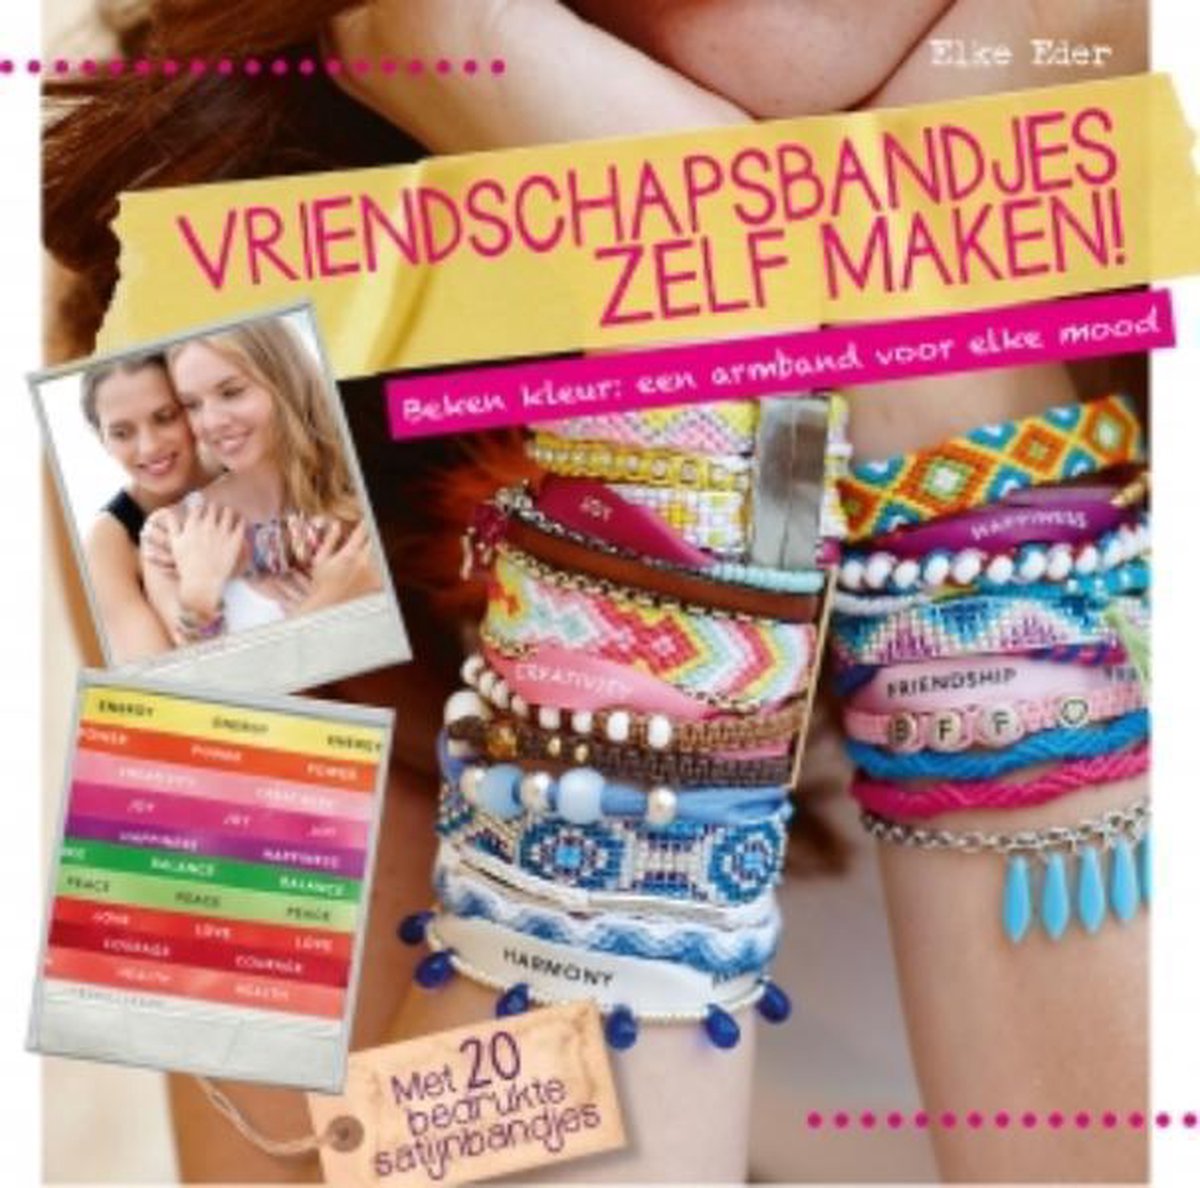 Vriendschapsbandjes zelf maken!, Elke Eder | 9789043918589 | Boeken |  bol.com